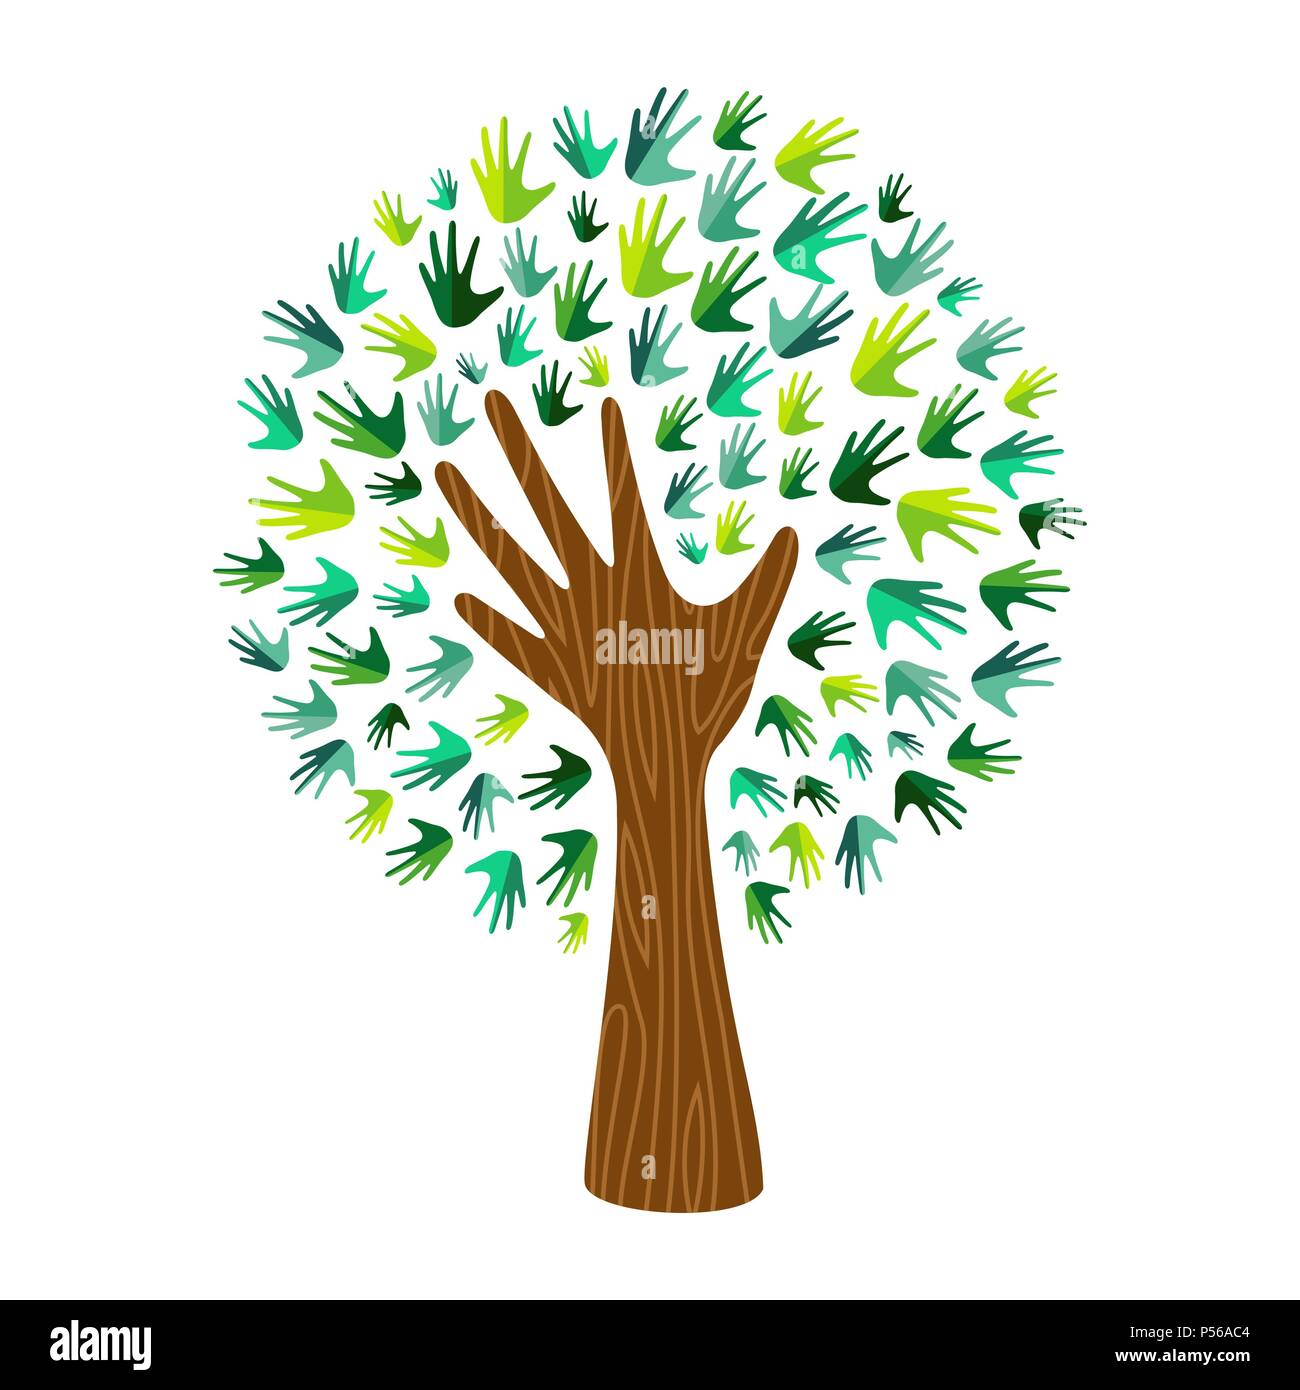 L'art de l'arborescence avec texture bois et feuilles vertes. Concept illustration pour les soins de l'environnement ou la nature de l'aide projet. Vecteur EPS10. Illustration de Vecteur